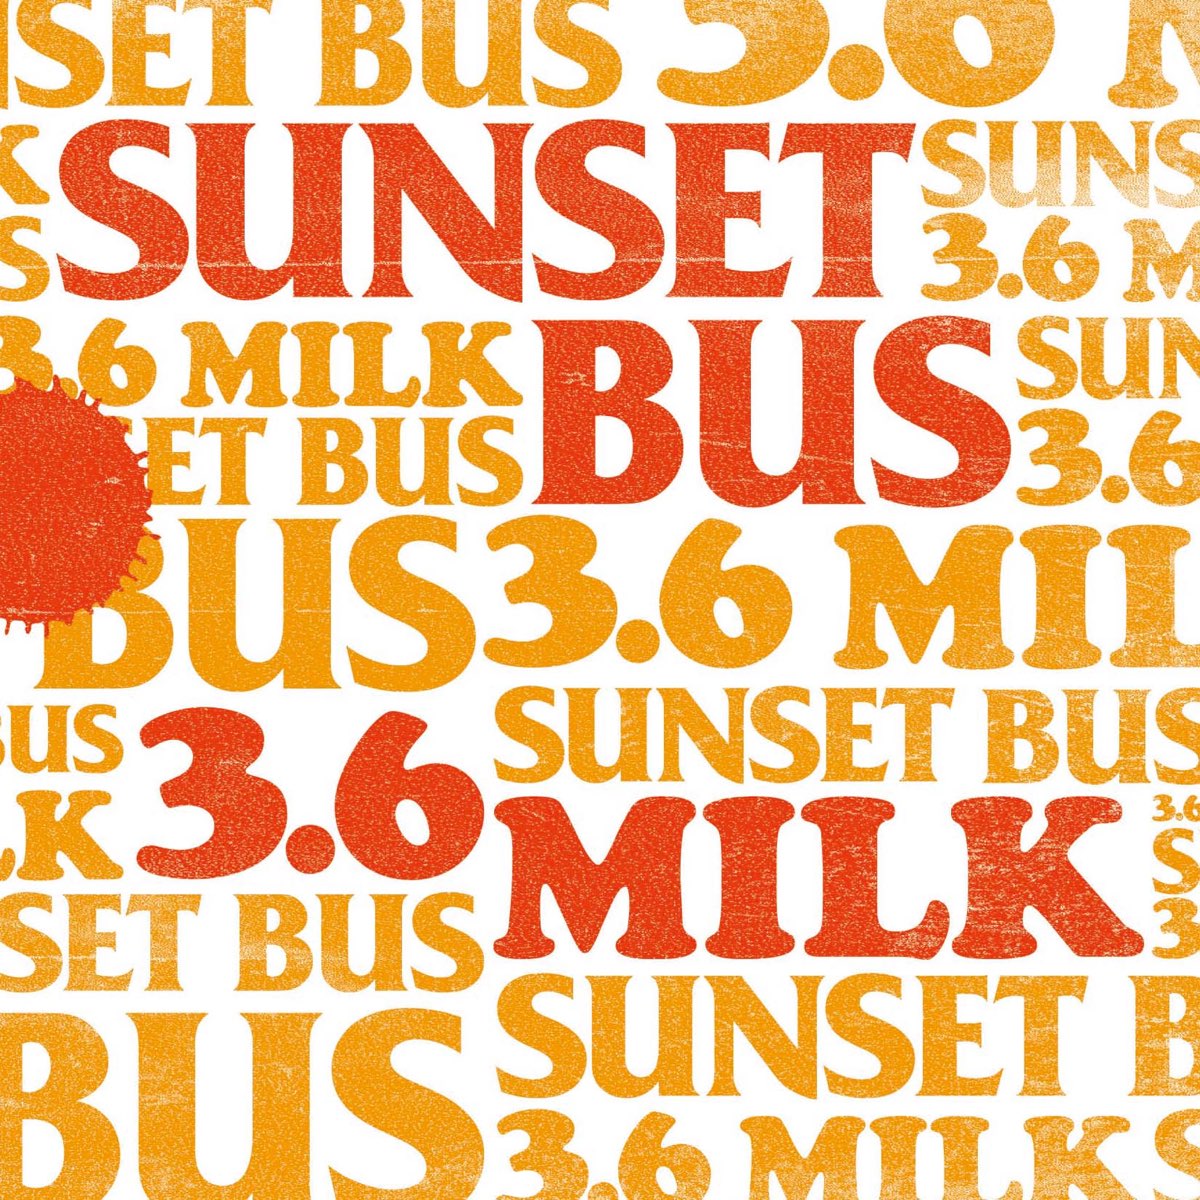 Bus"Sunset. Busing песни